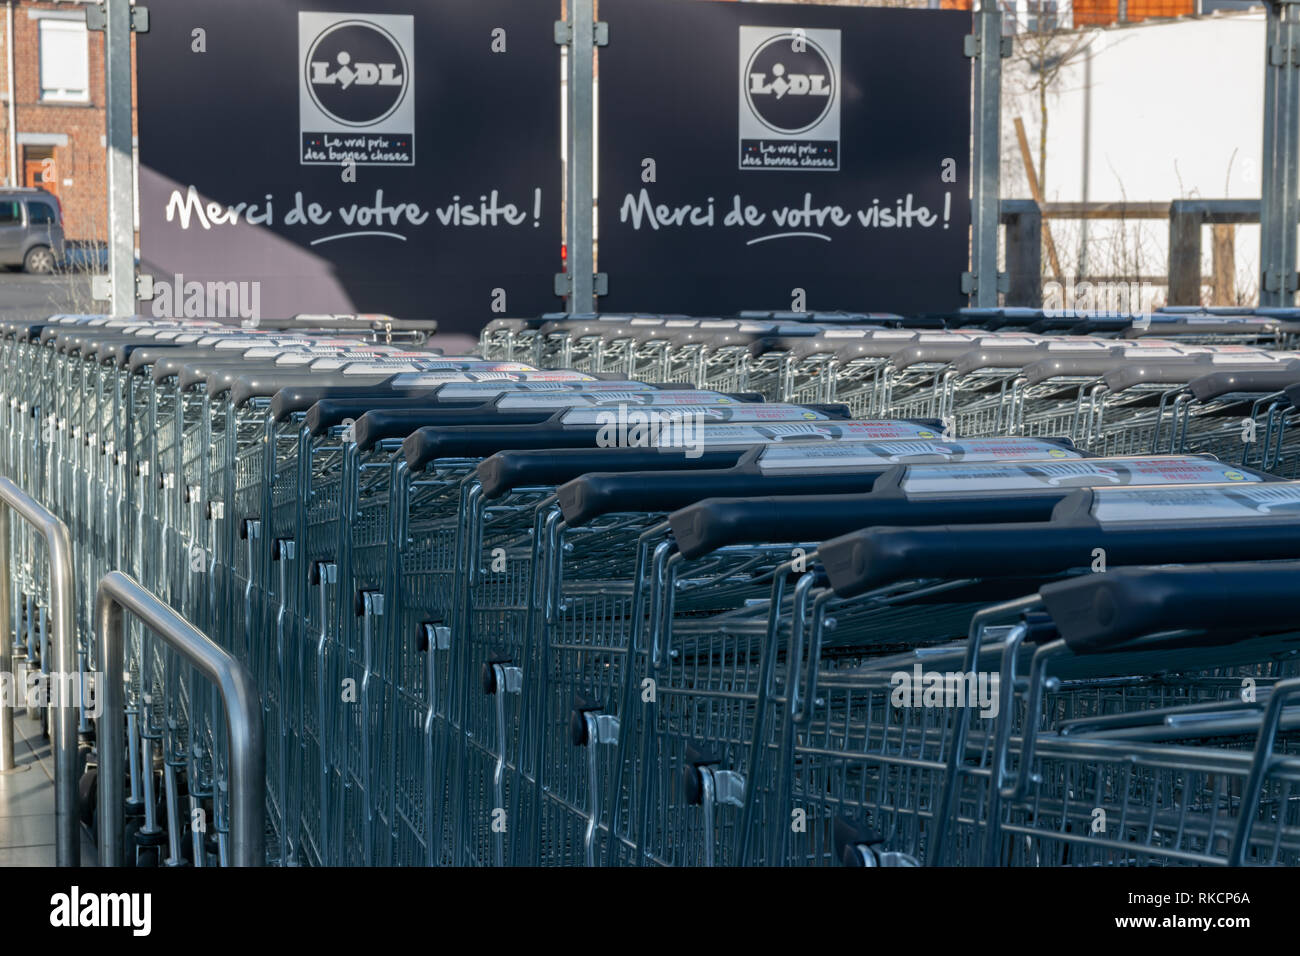 Wattrelos,FRANCE-Janvier 20,2019 : chariots de supermarché Lidl.Lidl Stiftung & Co. est une chaîne de supermarchés allemande remise globale. Banque D'Images